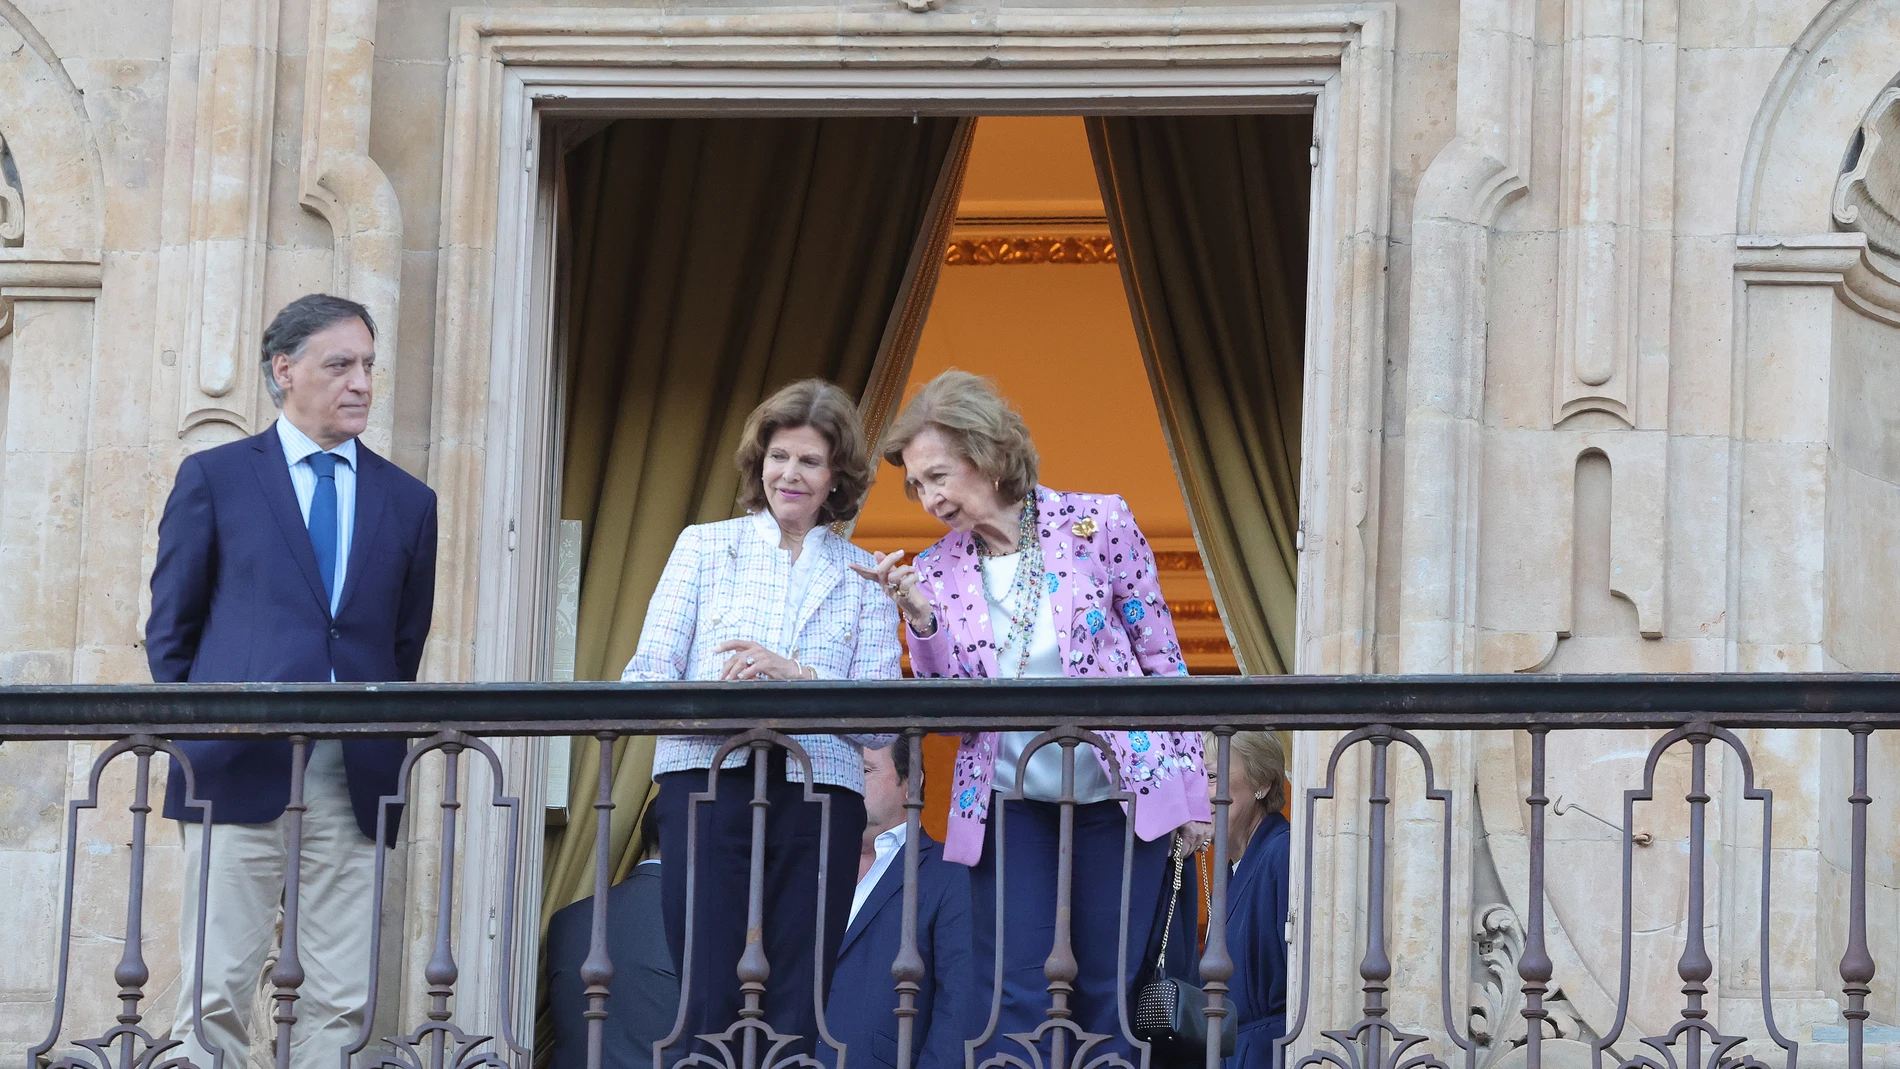 Las reinas Sofía de España y Silvia de Suecia (c) han recorrido este lunes las calles del centro histórico de Salamanca